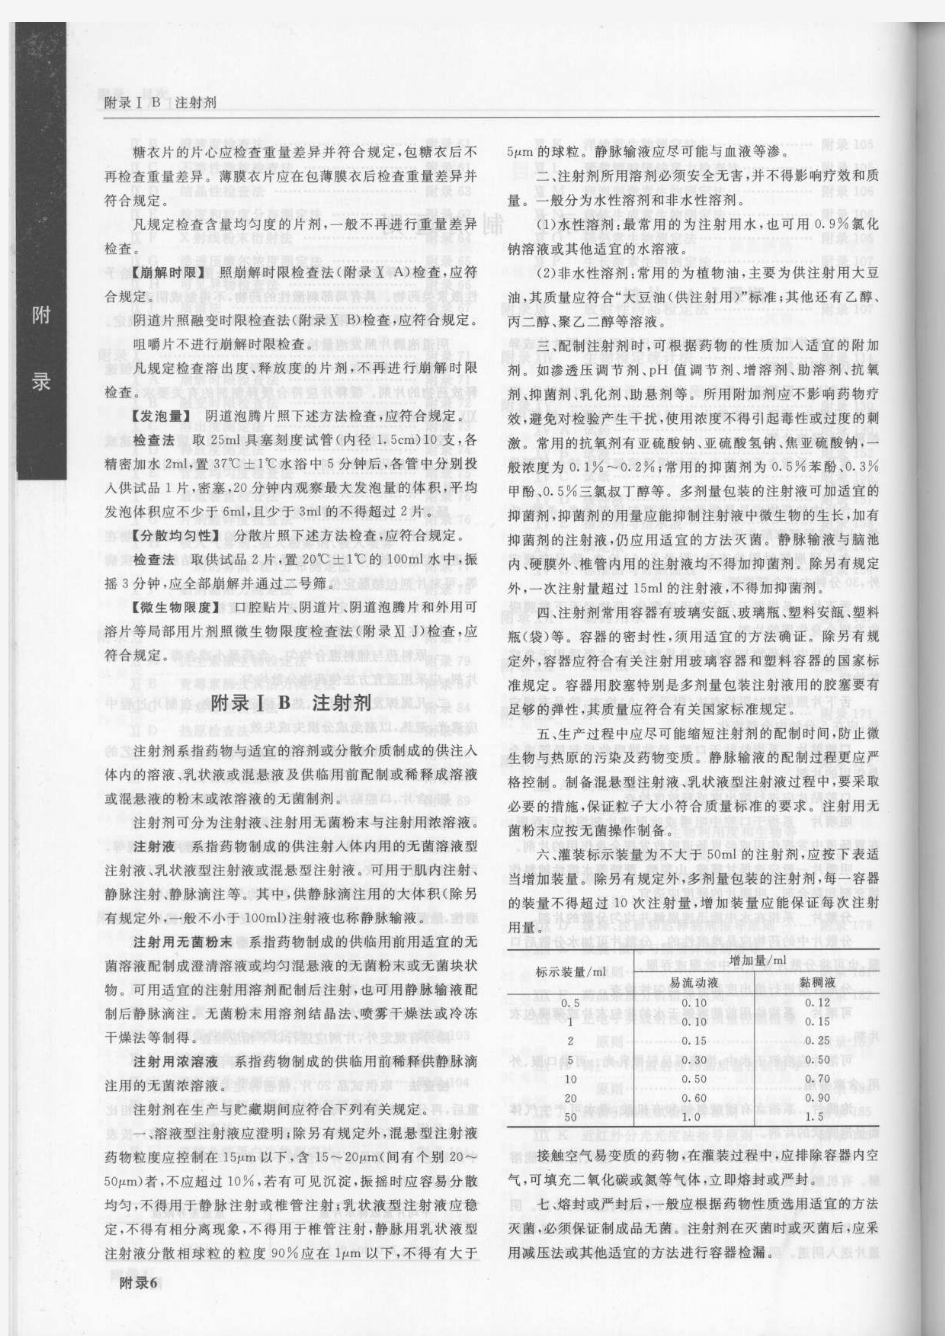 《中国药典》2005年版二部附录ⅠA 片剂